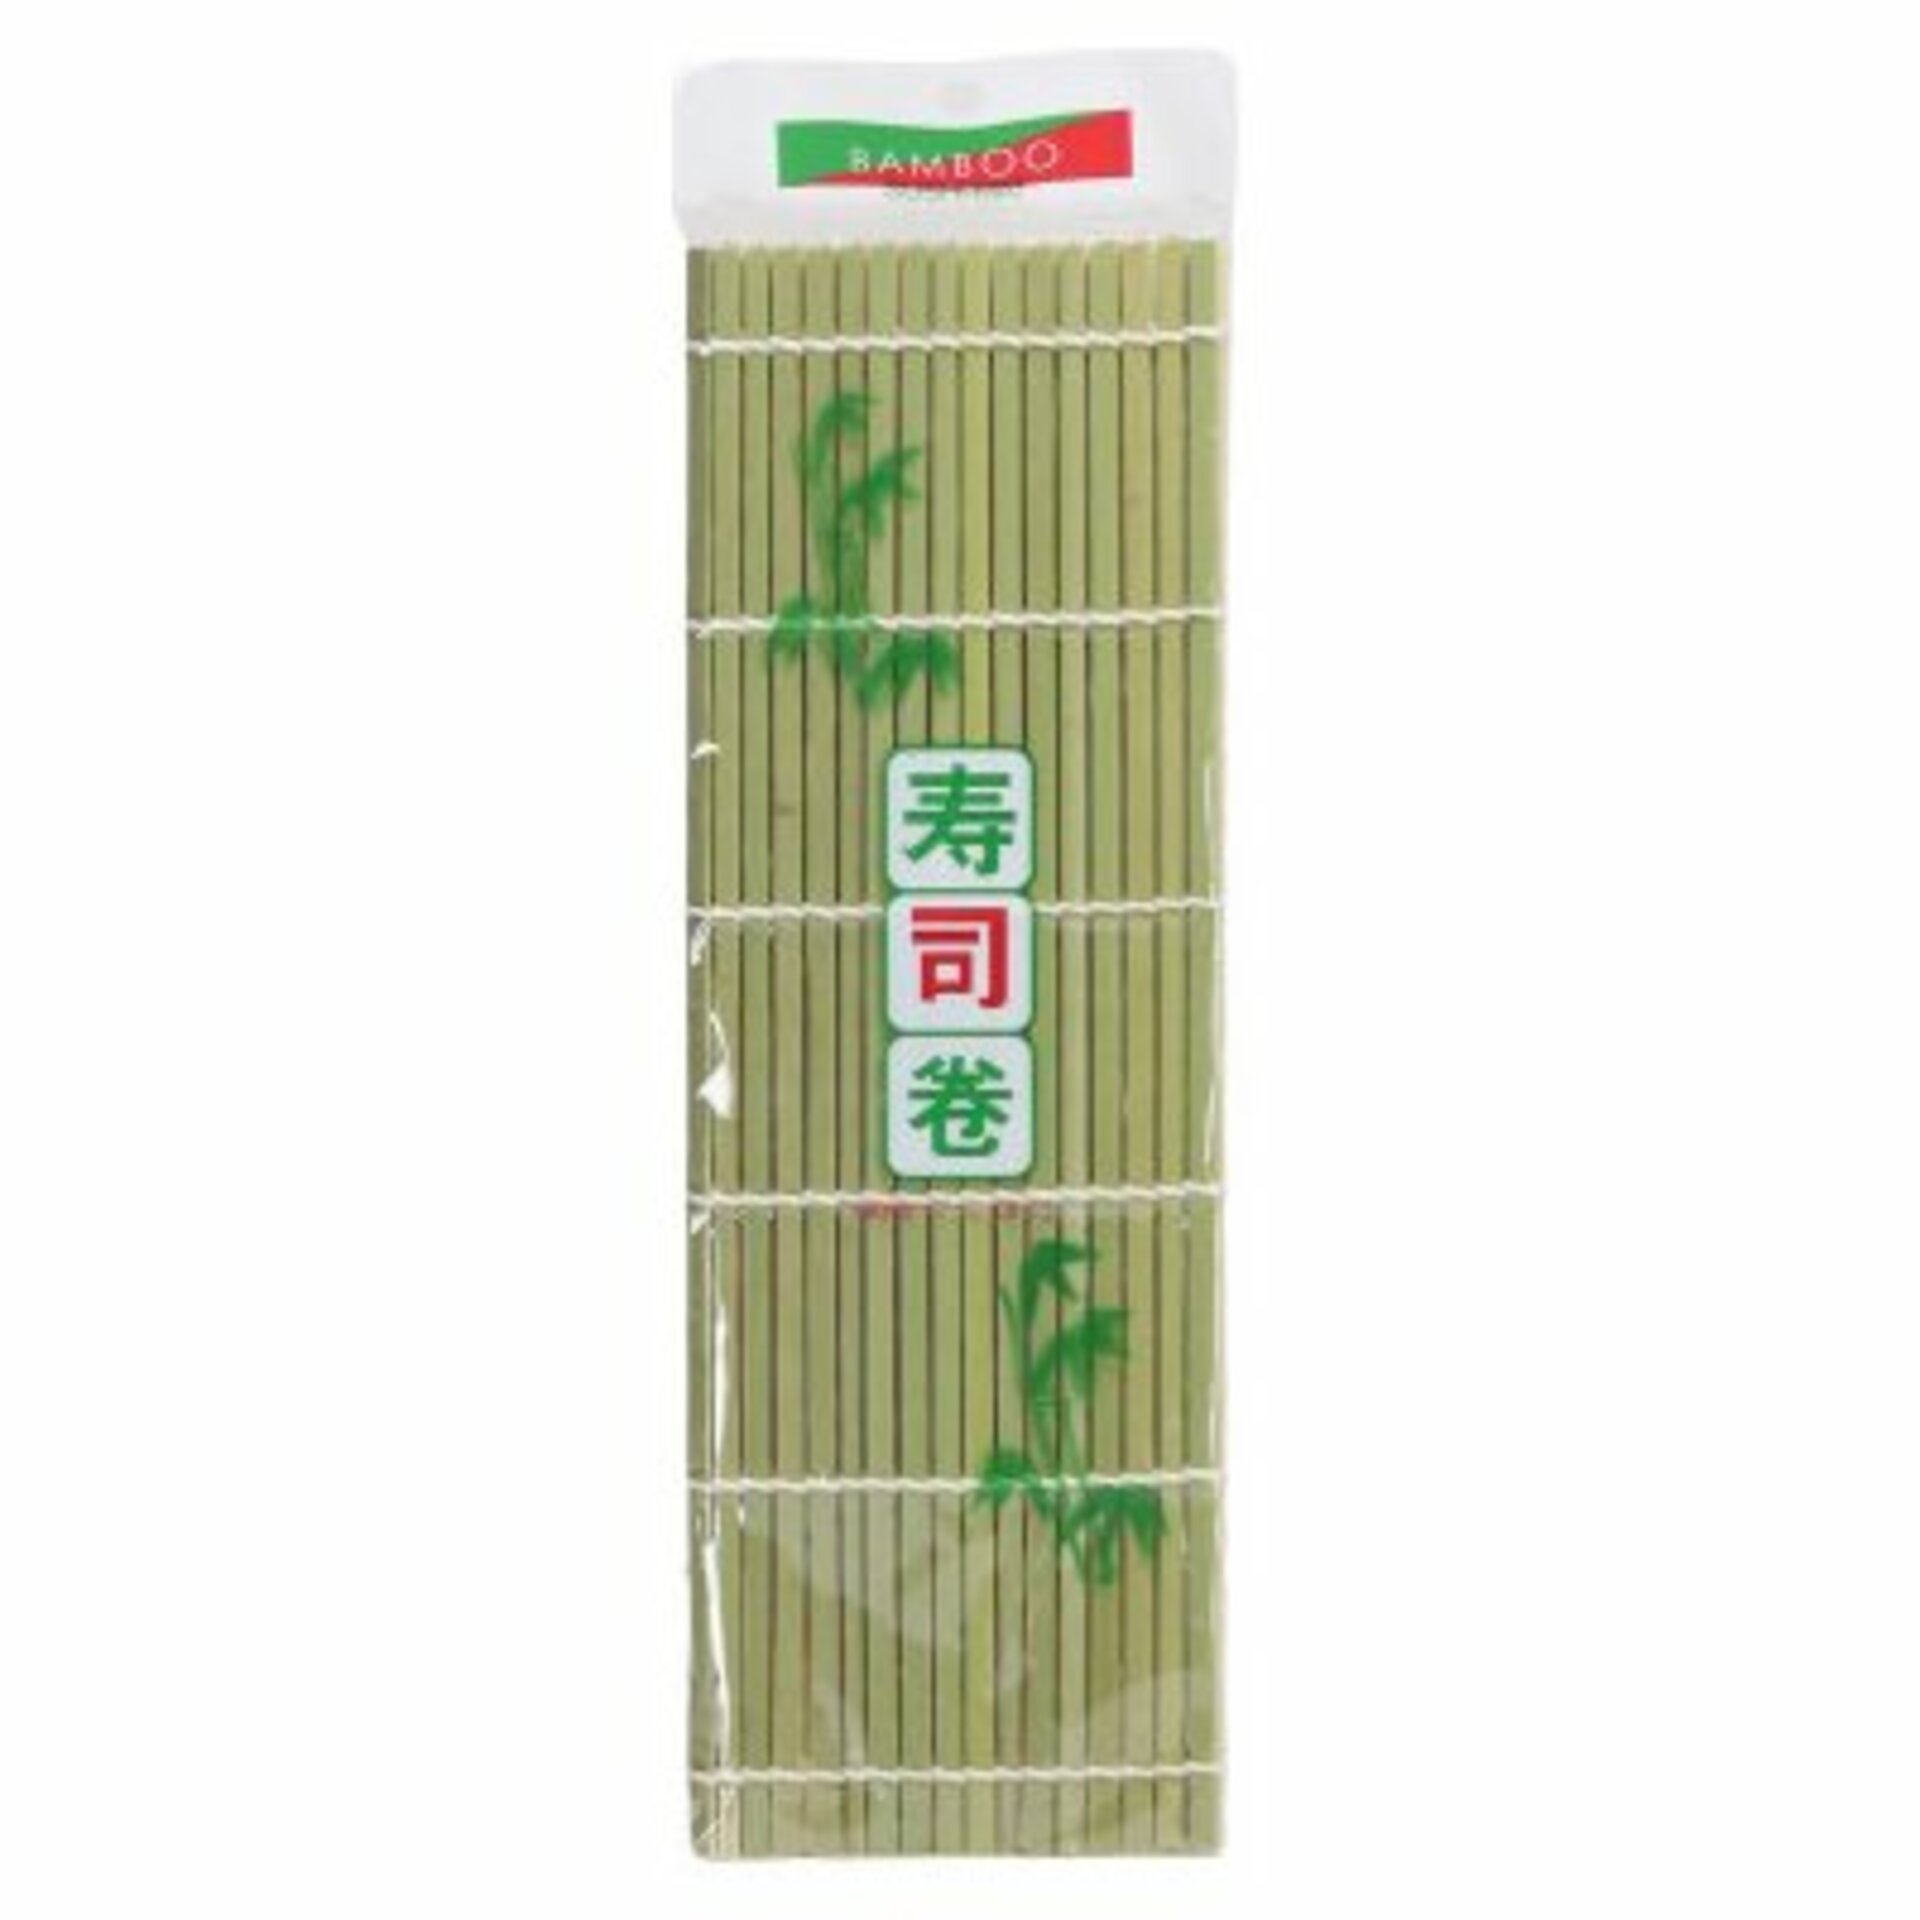 Bamboo Podložka bambusová na výrobu sushi